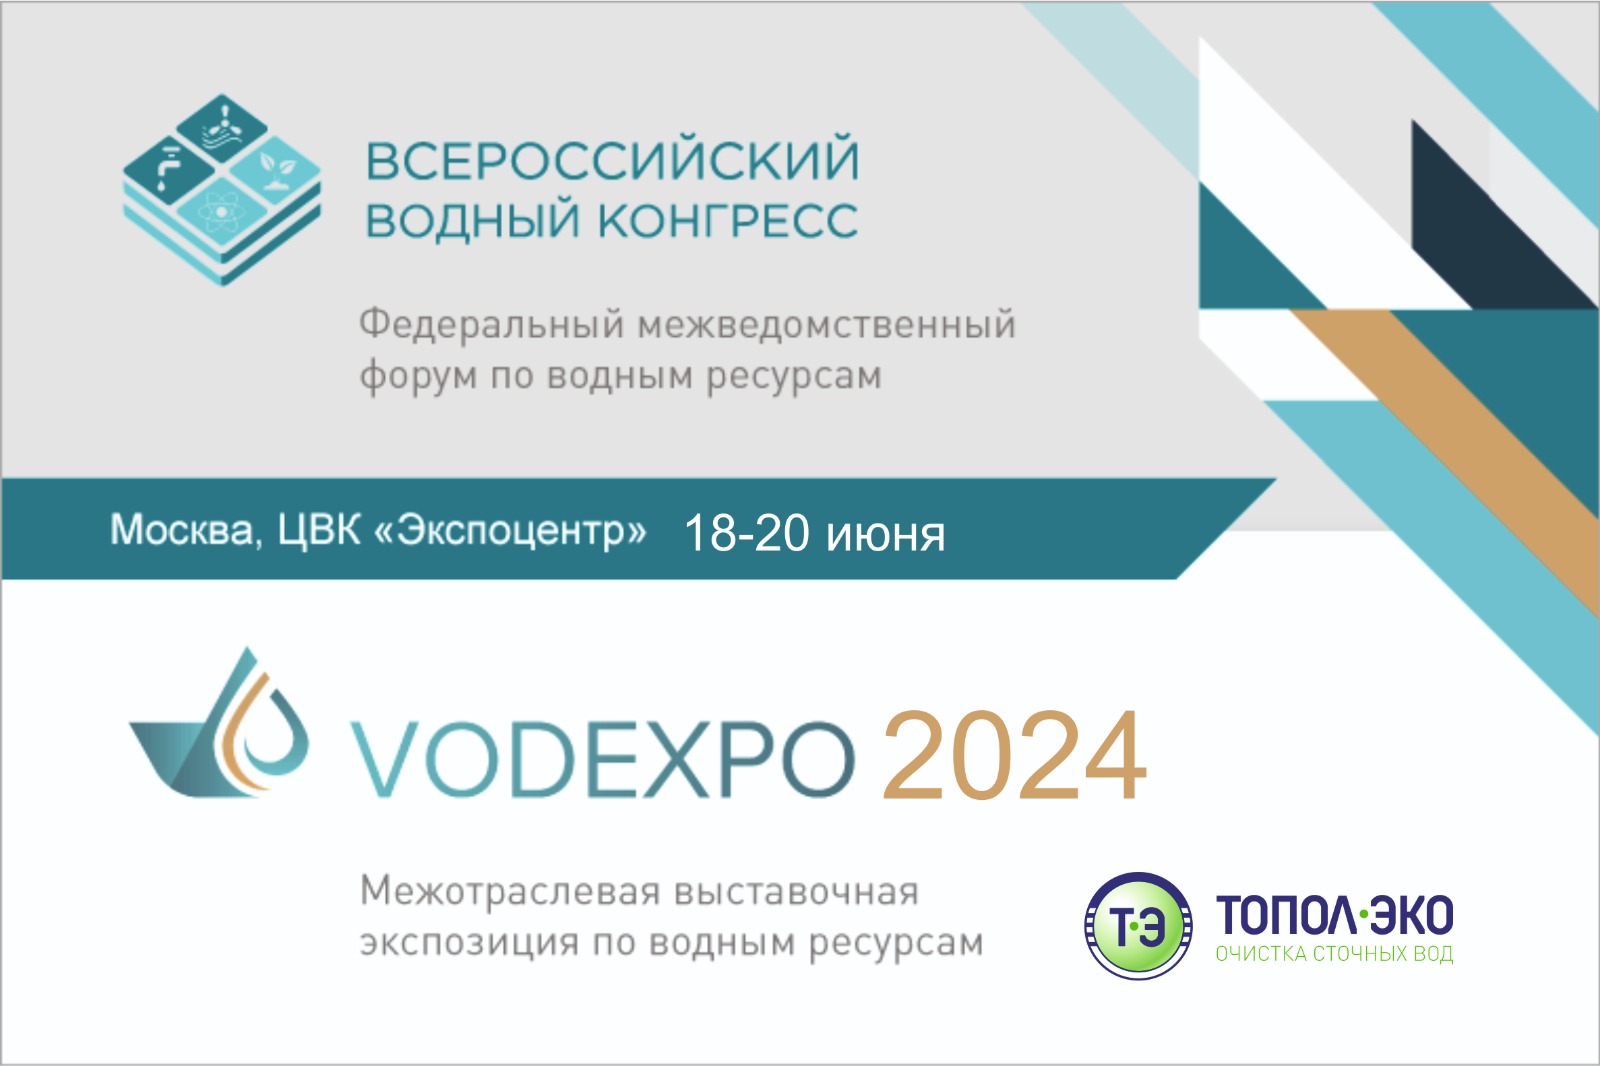 Компания "ТОПОЛ-ЭКО" приглашает вас посетить Всероссийский водный конгресс